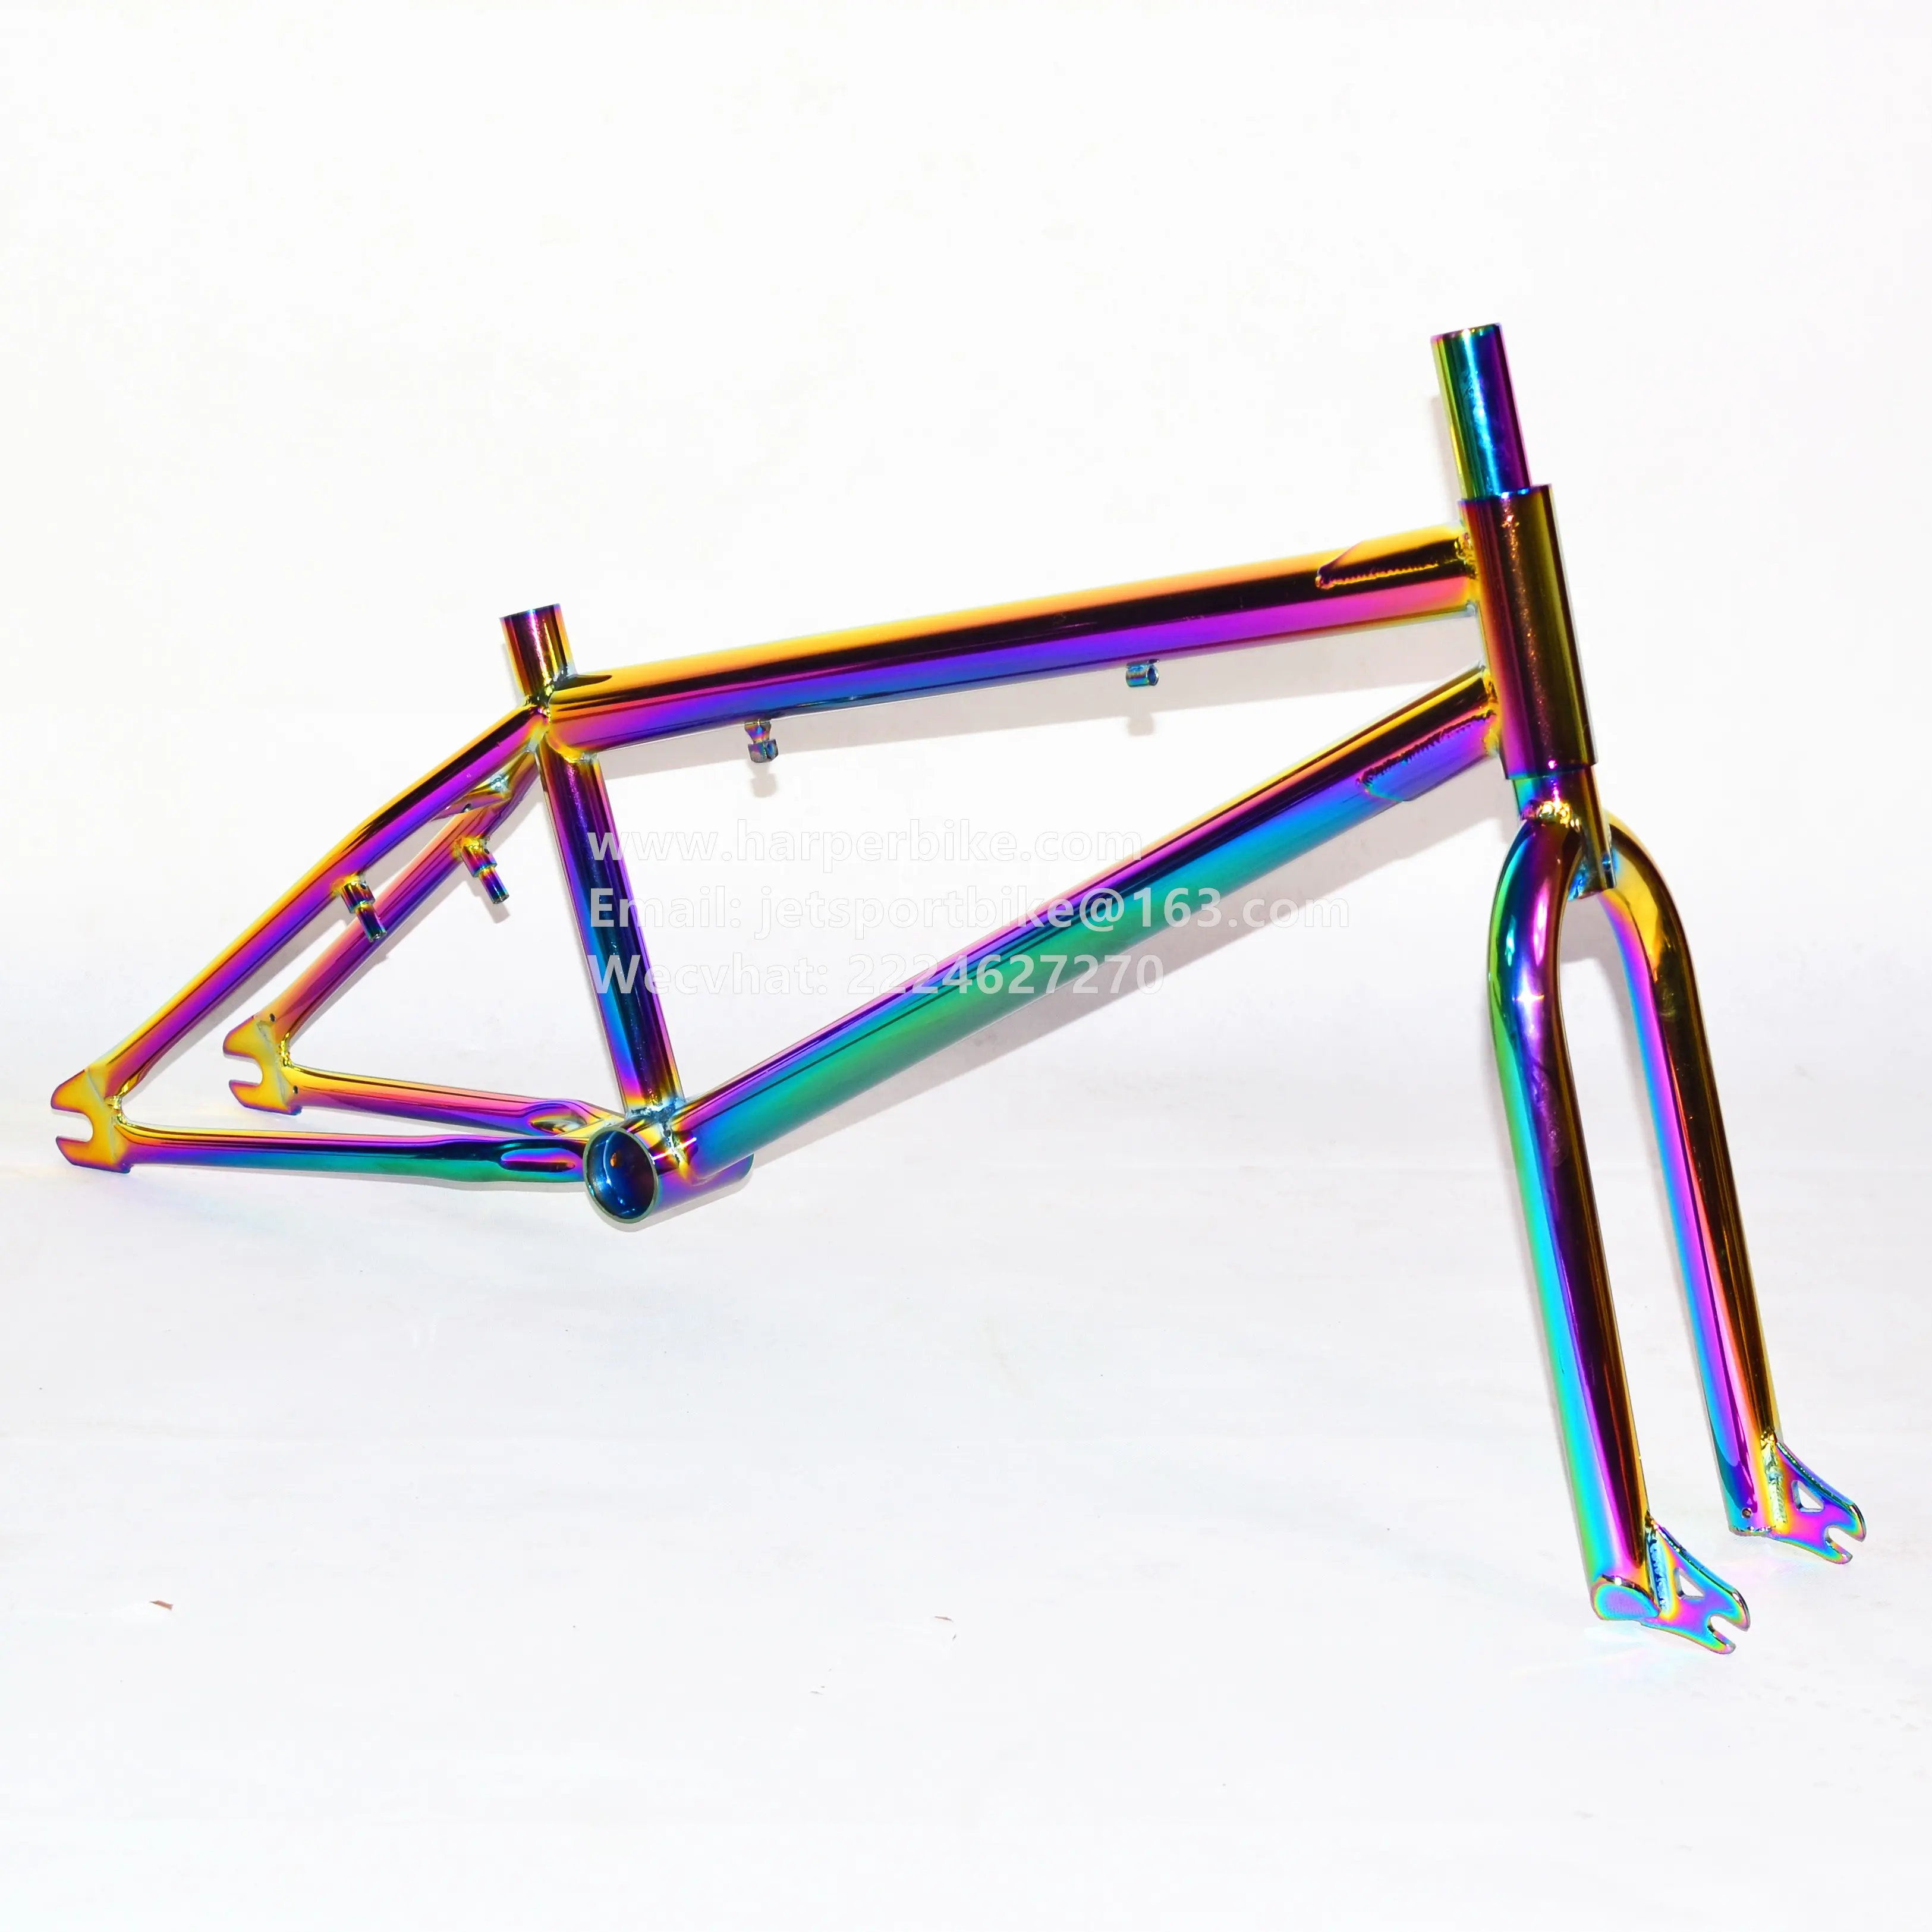 Cuadro/horquilla de bicicleta cromoly bmx, 20 ", colorido, chorro de arco iris, color combustible